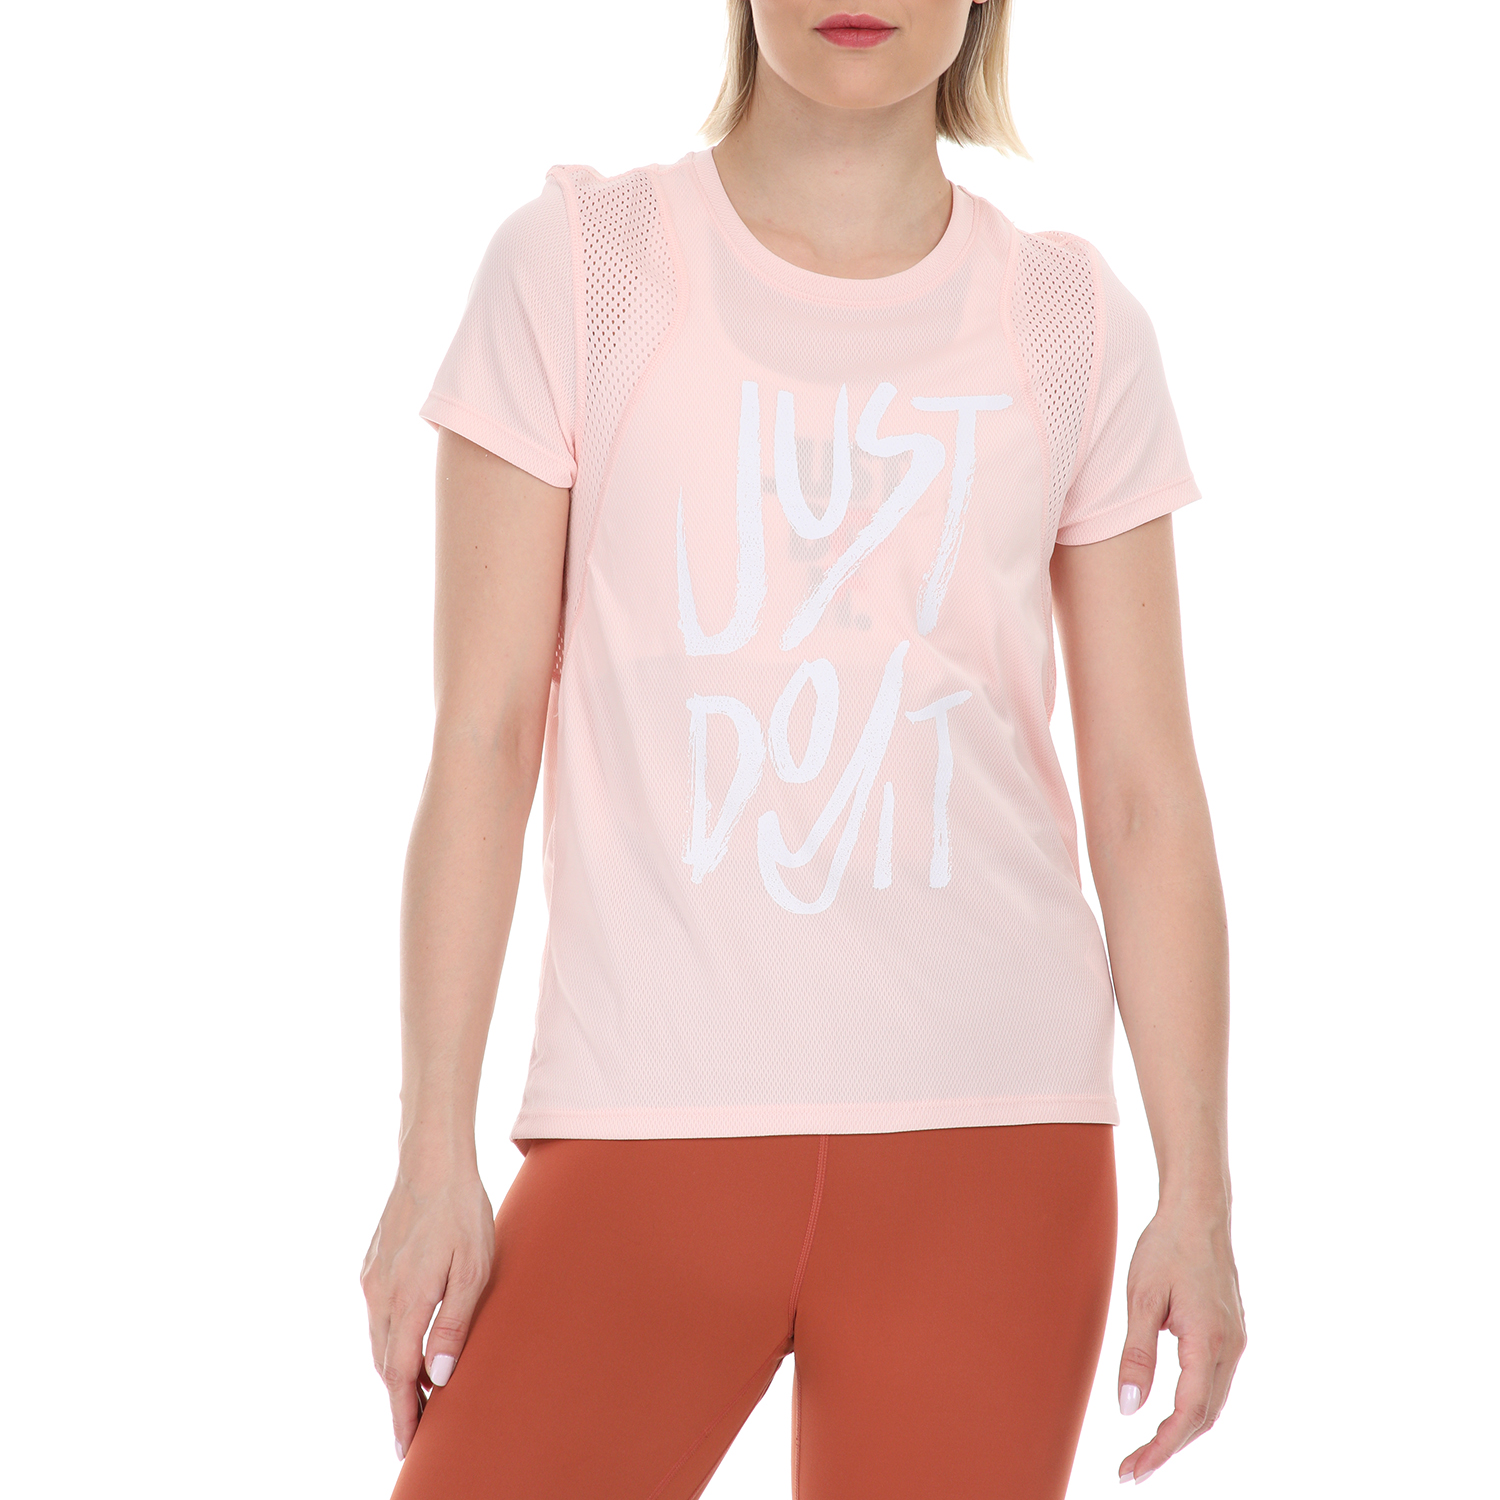 Γυναικεία/Ρούχα/Αθλητικά/T-shirt-Τοπ NIKE - Γυναικεία μπλούζα NIKE RUN TOP SS GX ροζ